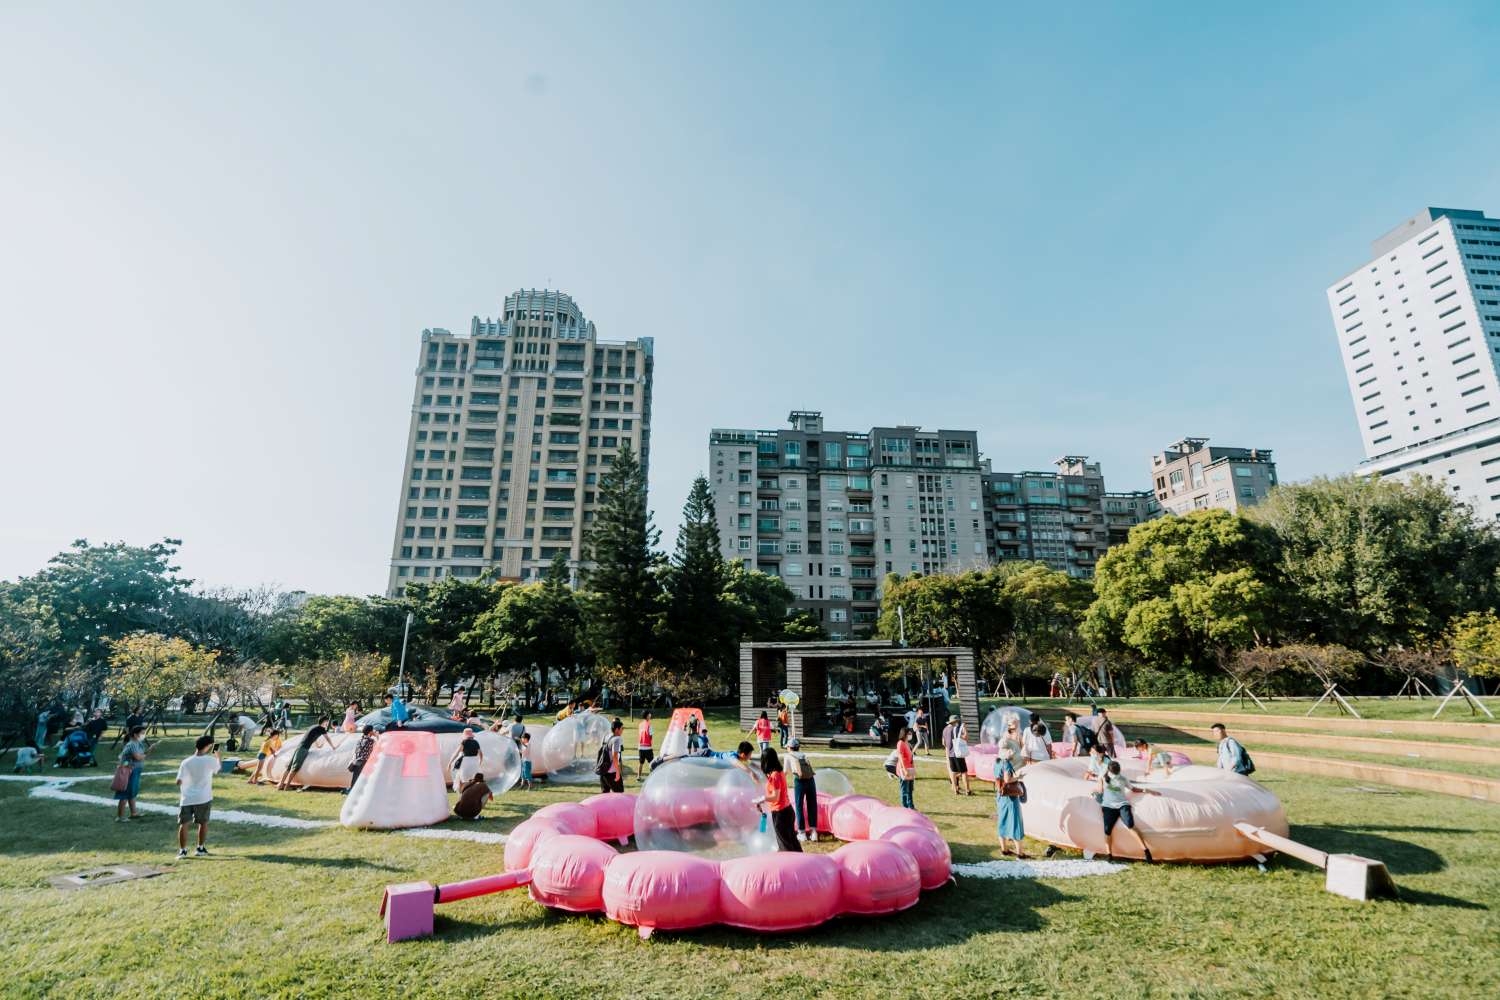 新竹公園圓形廣場的「泡泡遊戲場」，有巨型彈跳軟墊可以無限跳耀、空飄泡泡球還能玩傳球等。照片提供/衍序規劃設計提供，攝影師Kris Kang